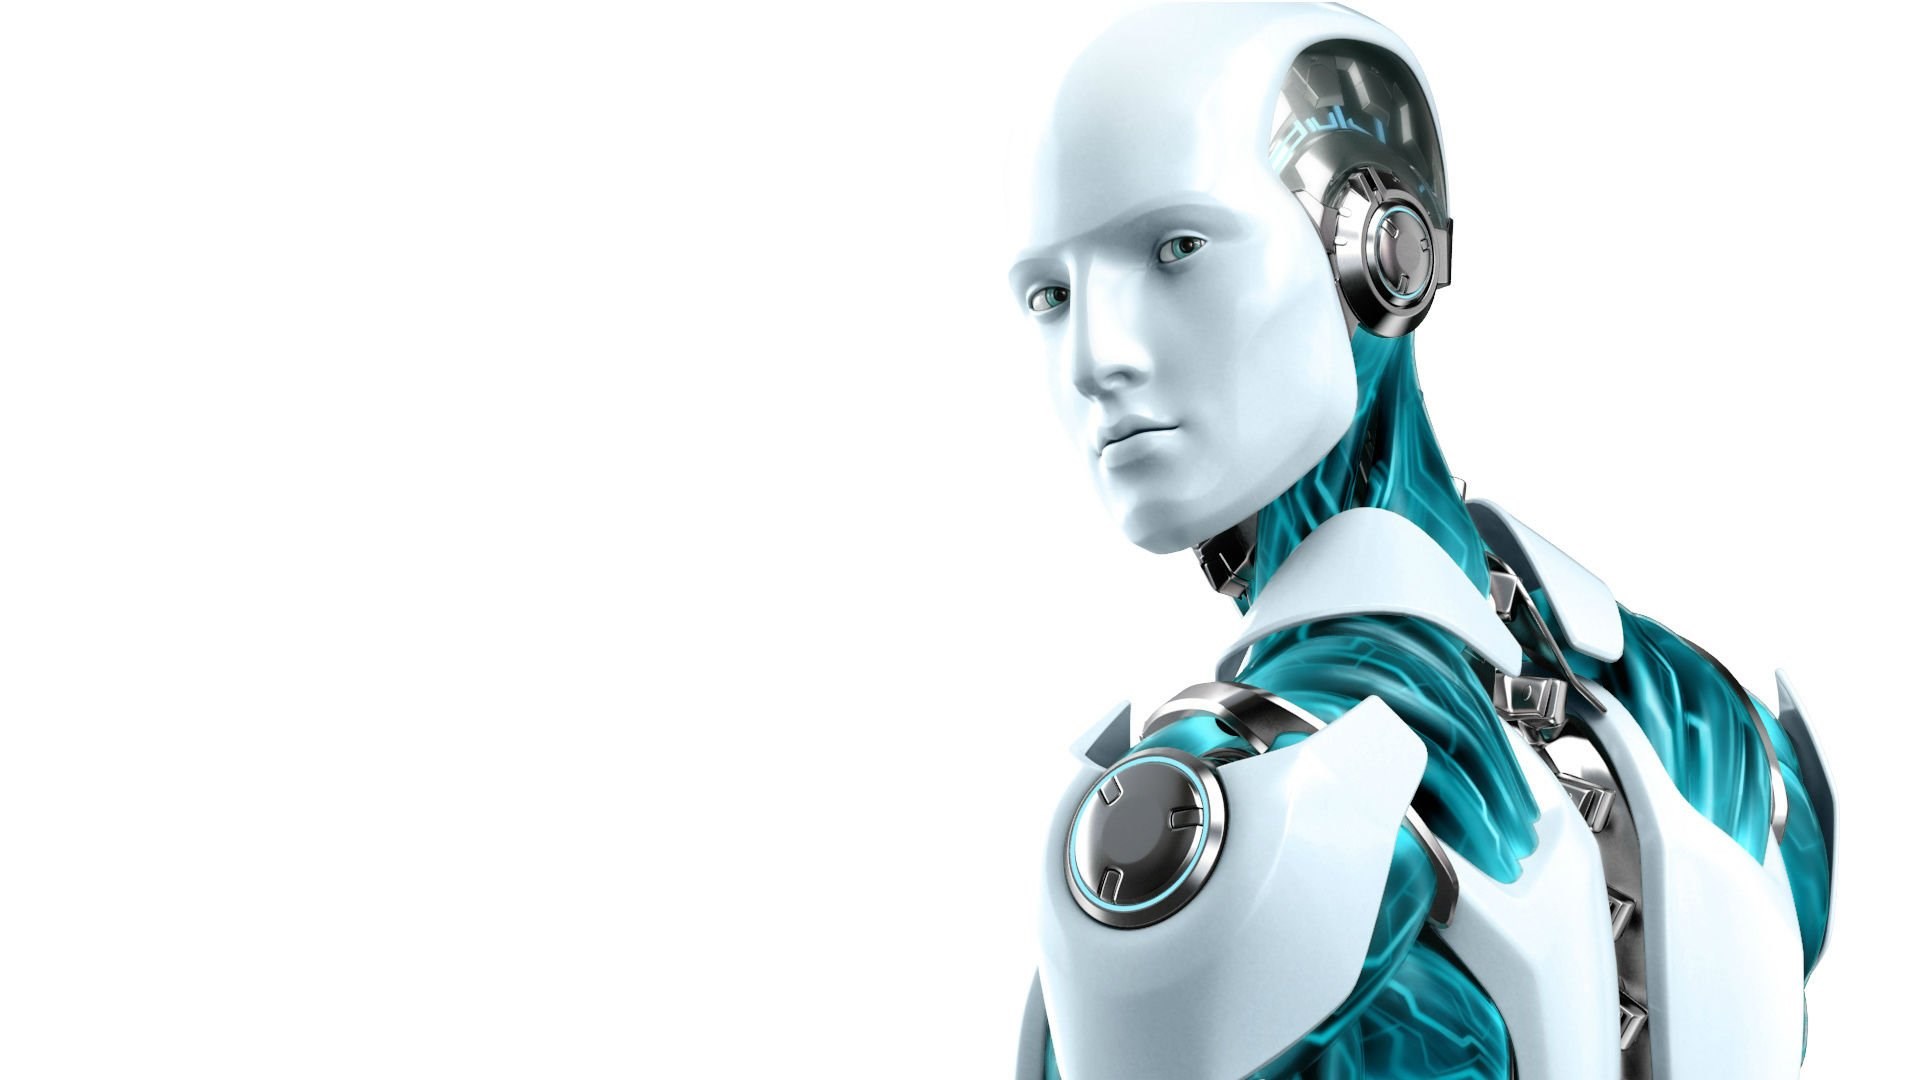 Är Robotics verkligen en störande teknik?